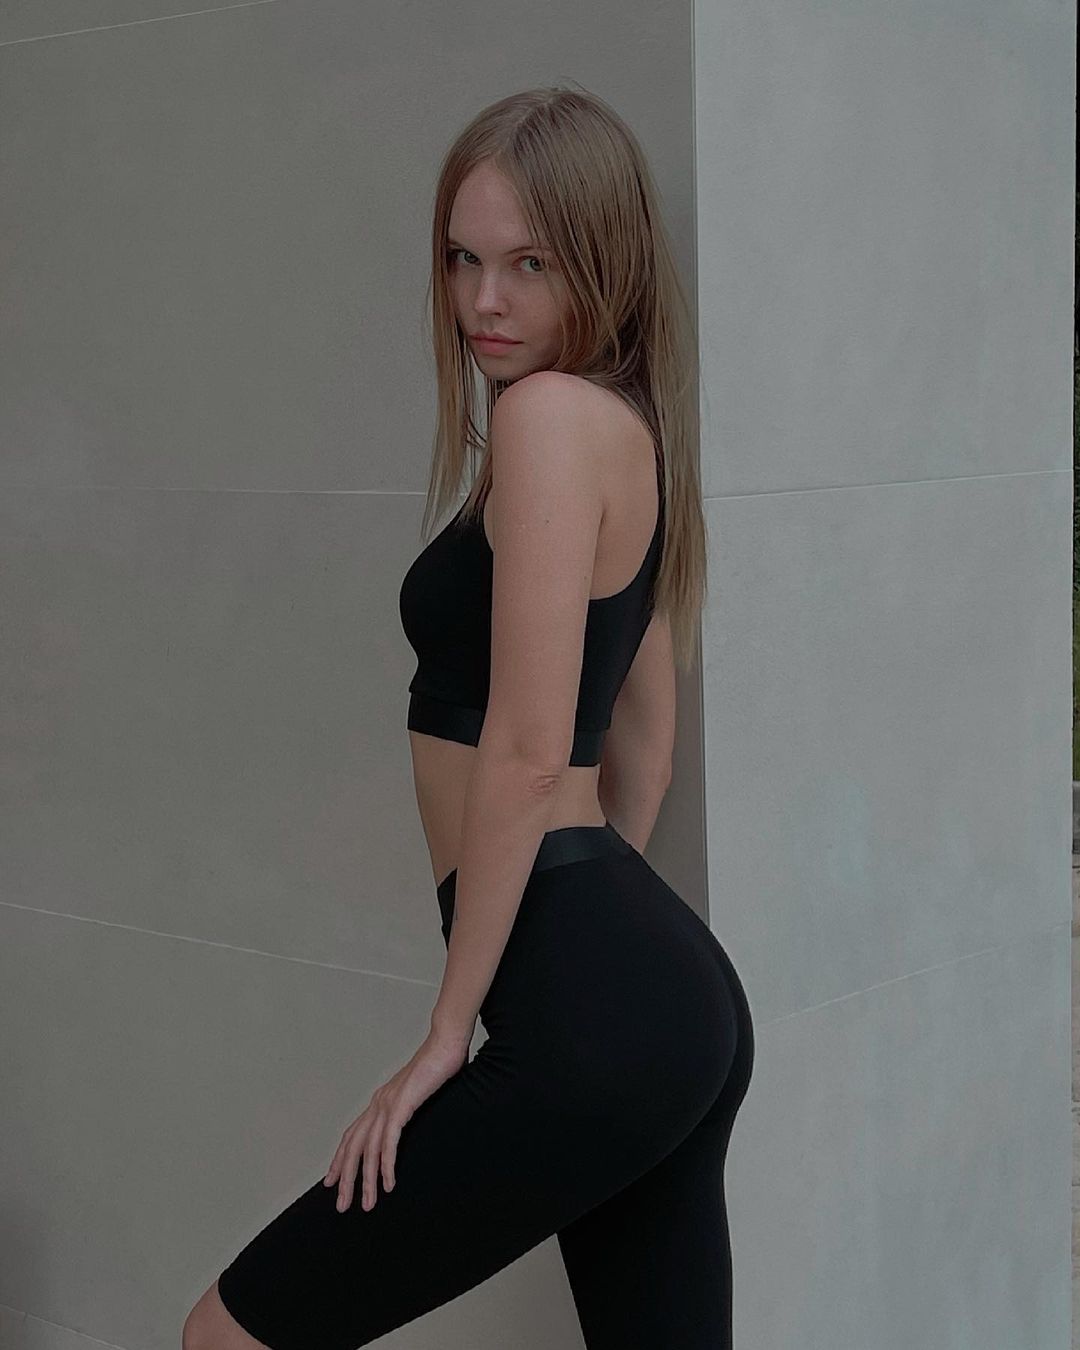 Anastasiya scheglova 10 hottest pics, anastasiya scheglova 10 instagram